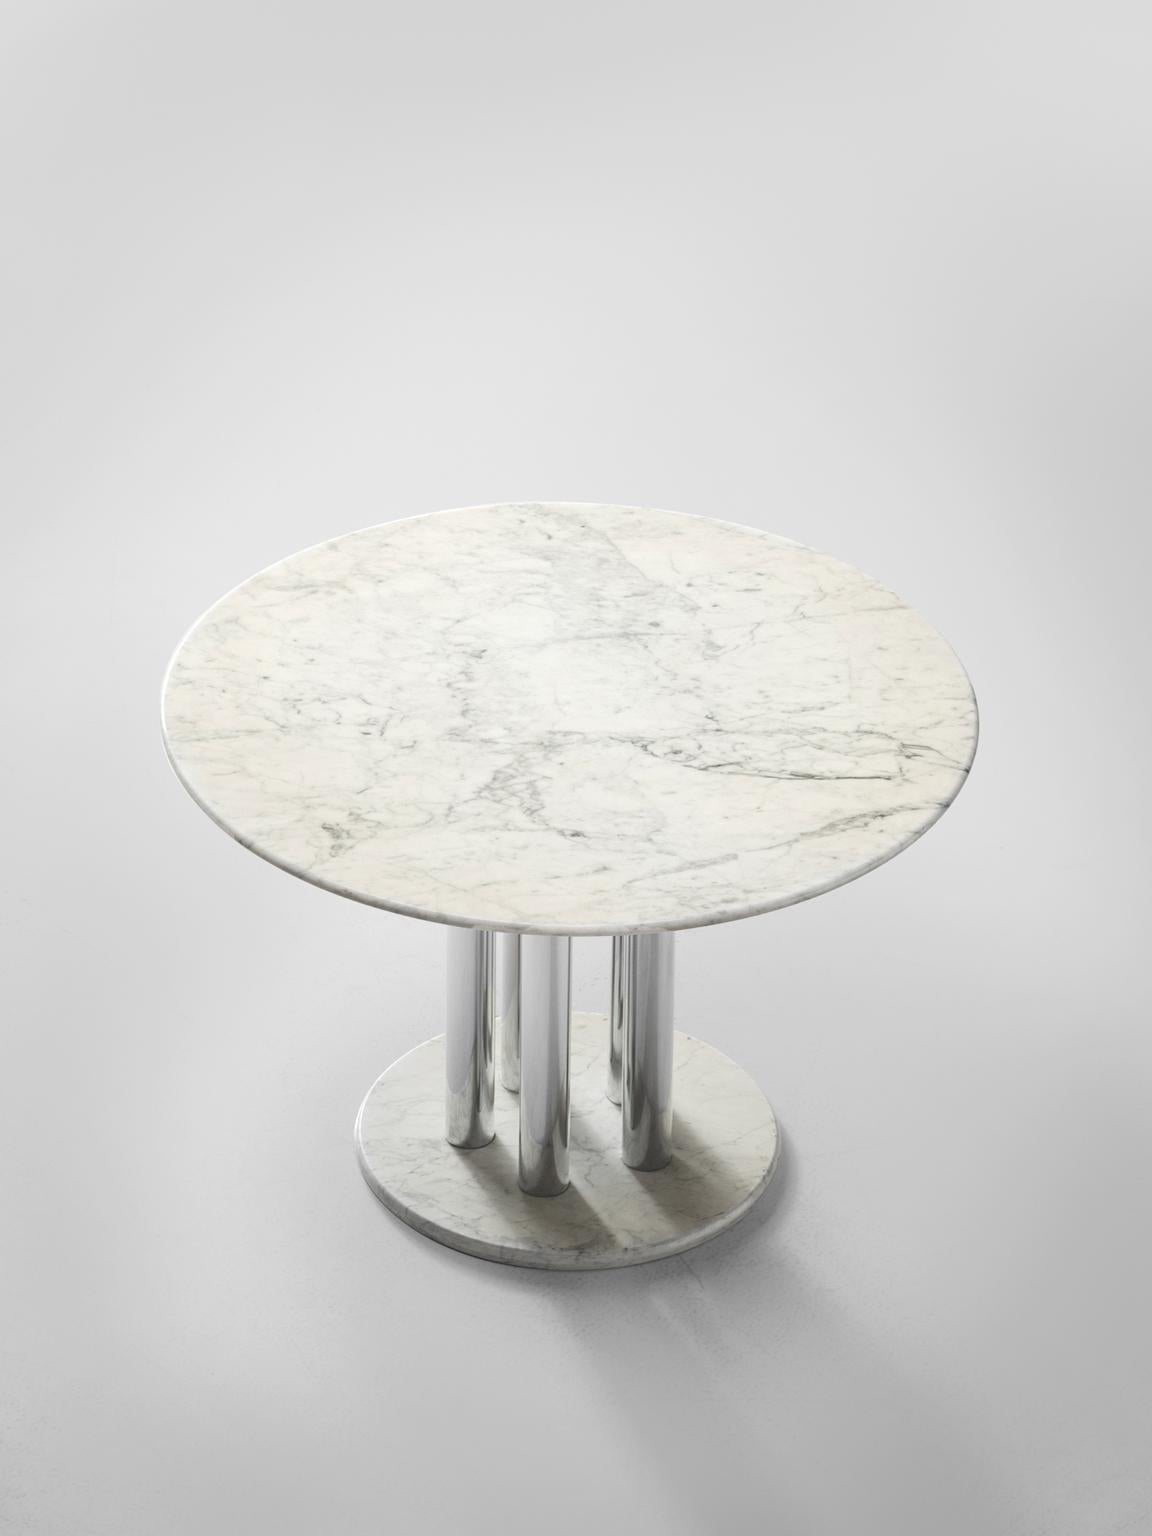 italian centre table designs